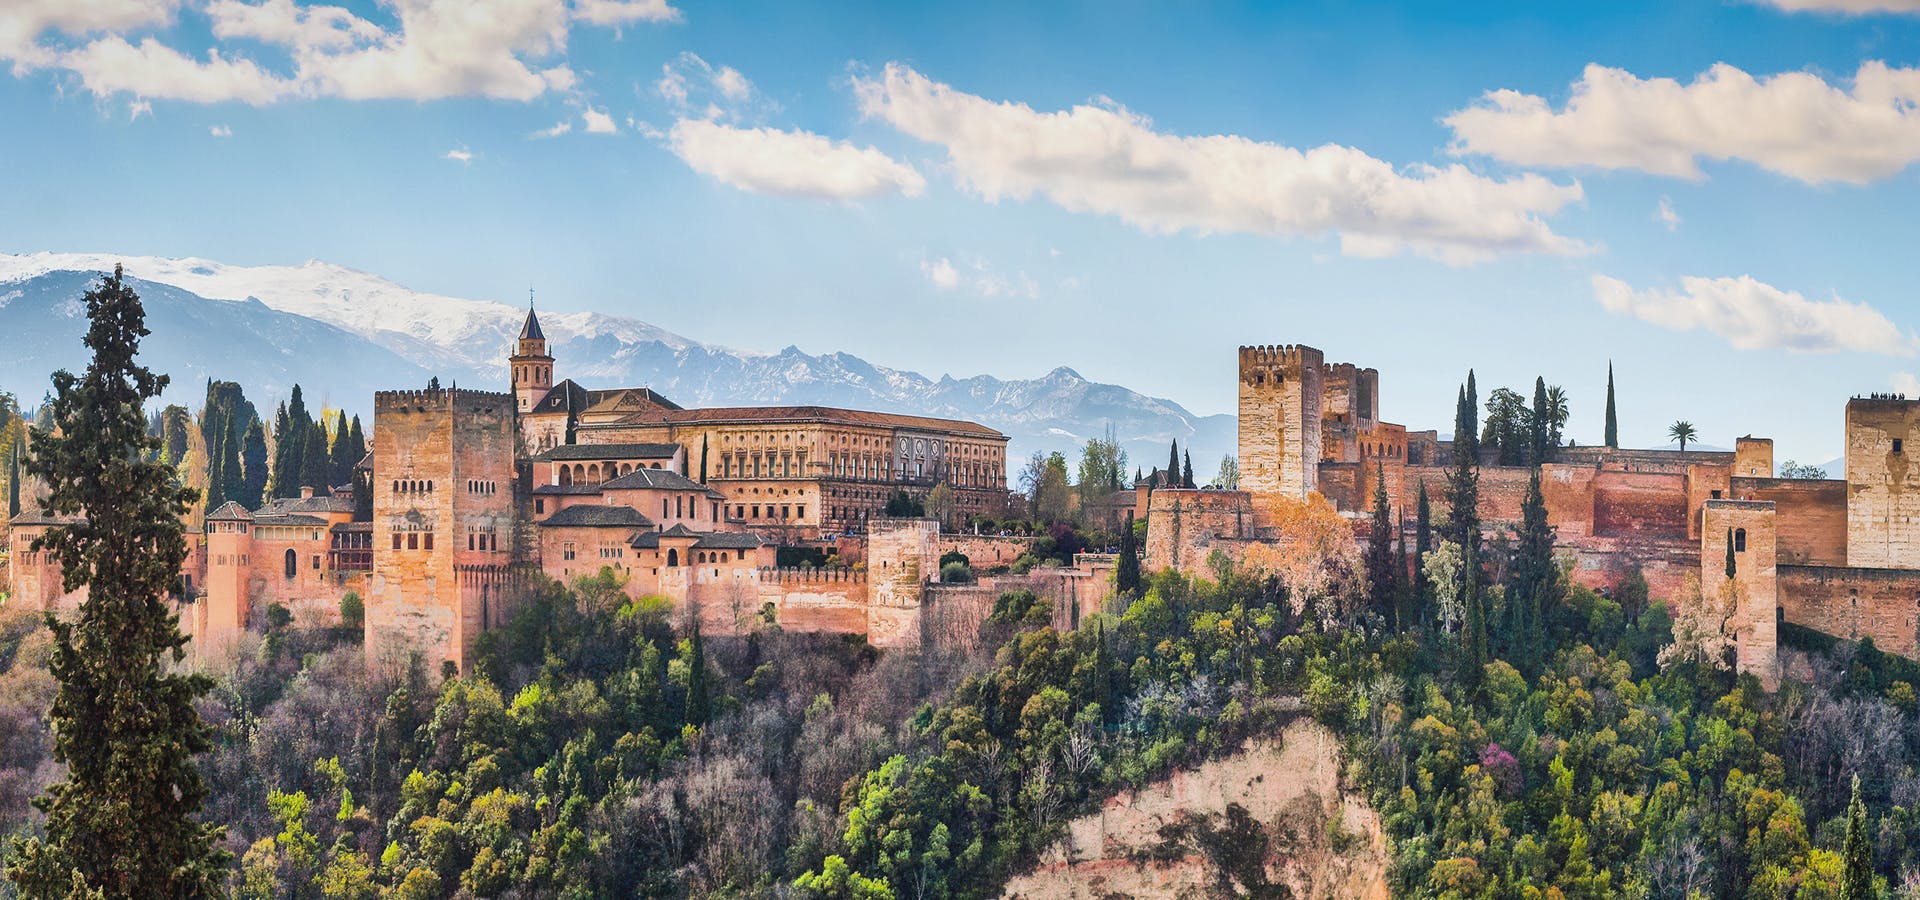 Wycieczka z biletami wstępu do całej Alhambry (pałace, Alcazaba, Generalife, ogrody)